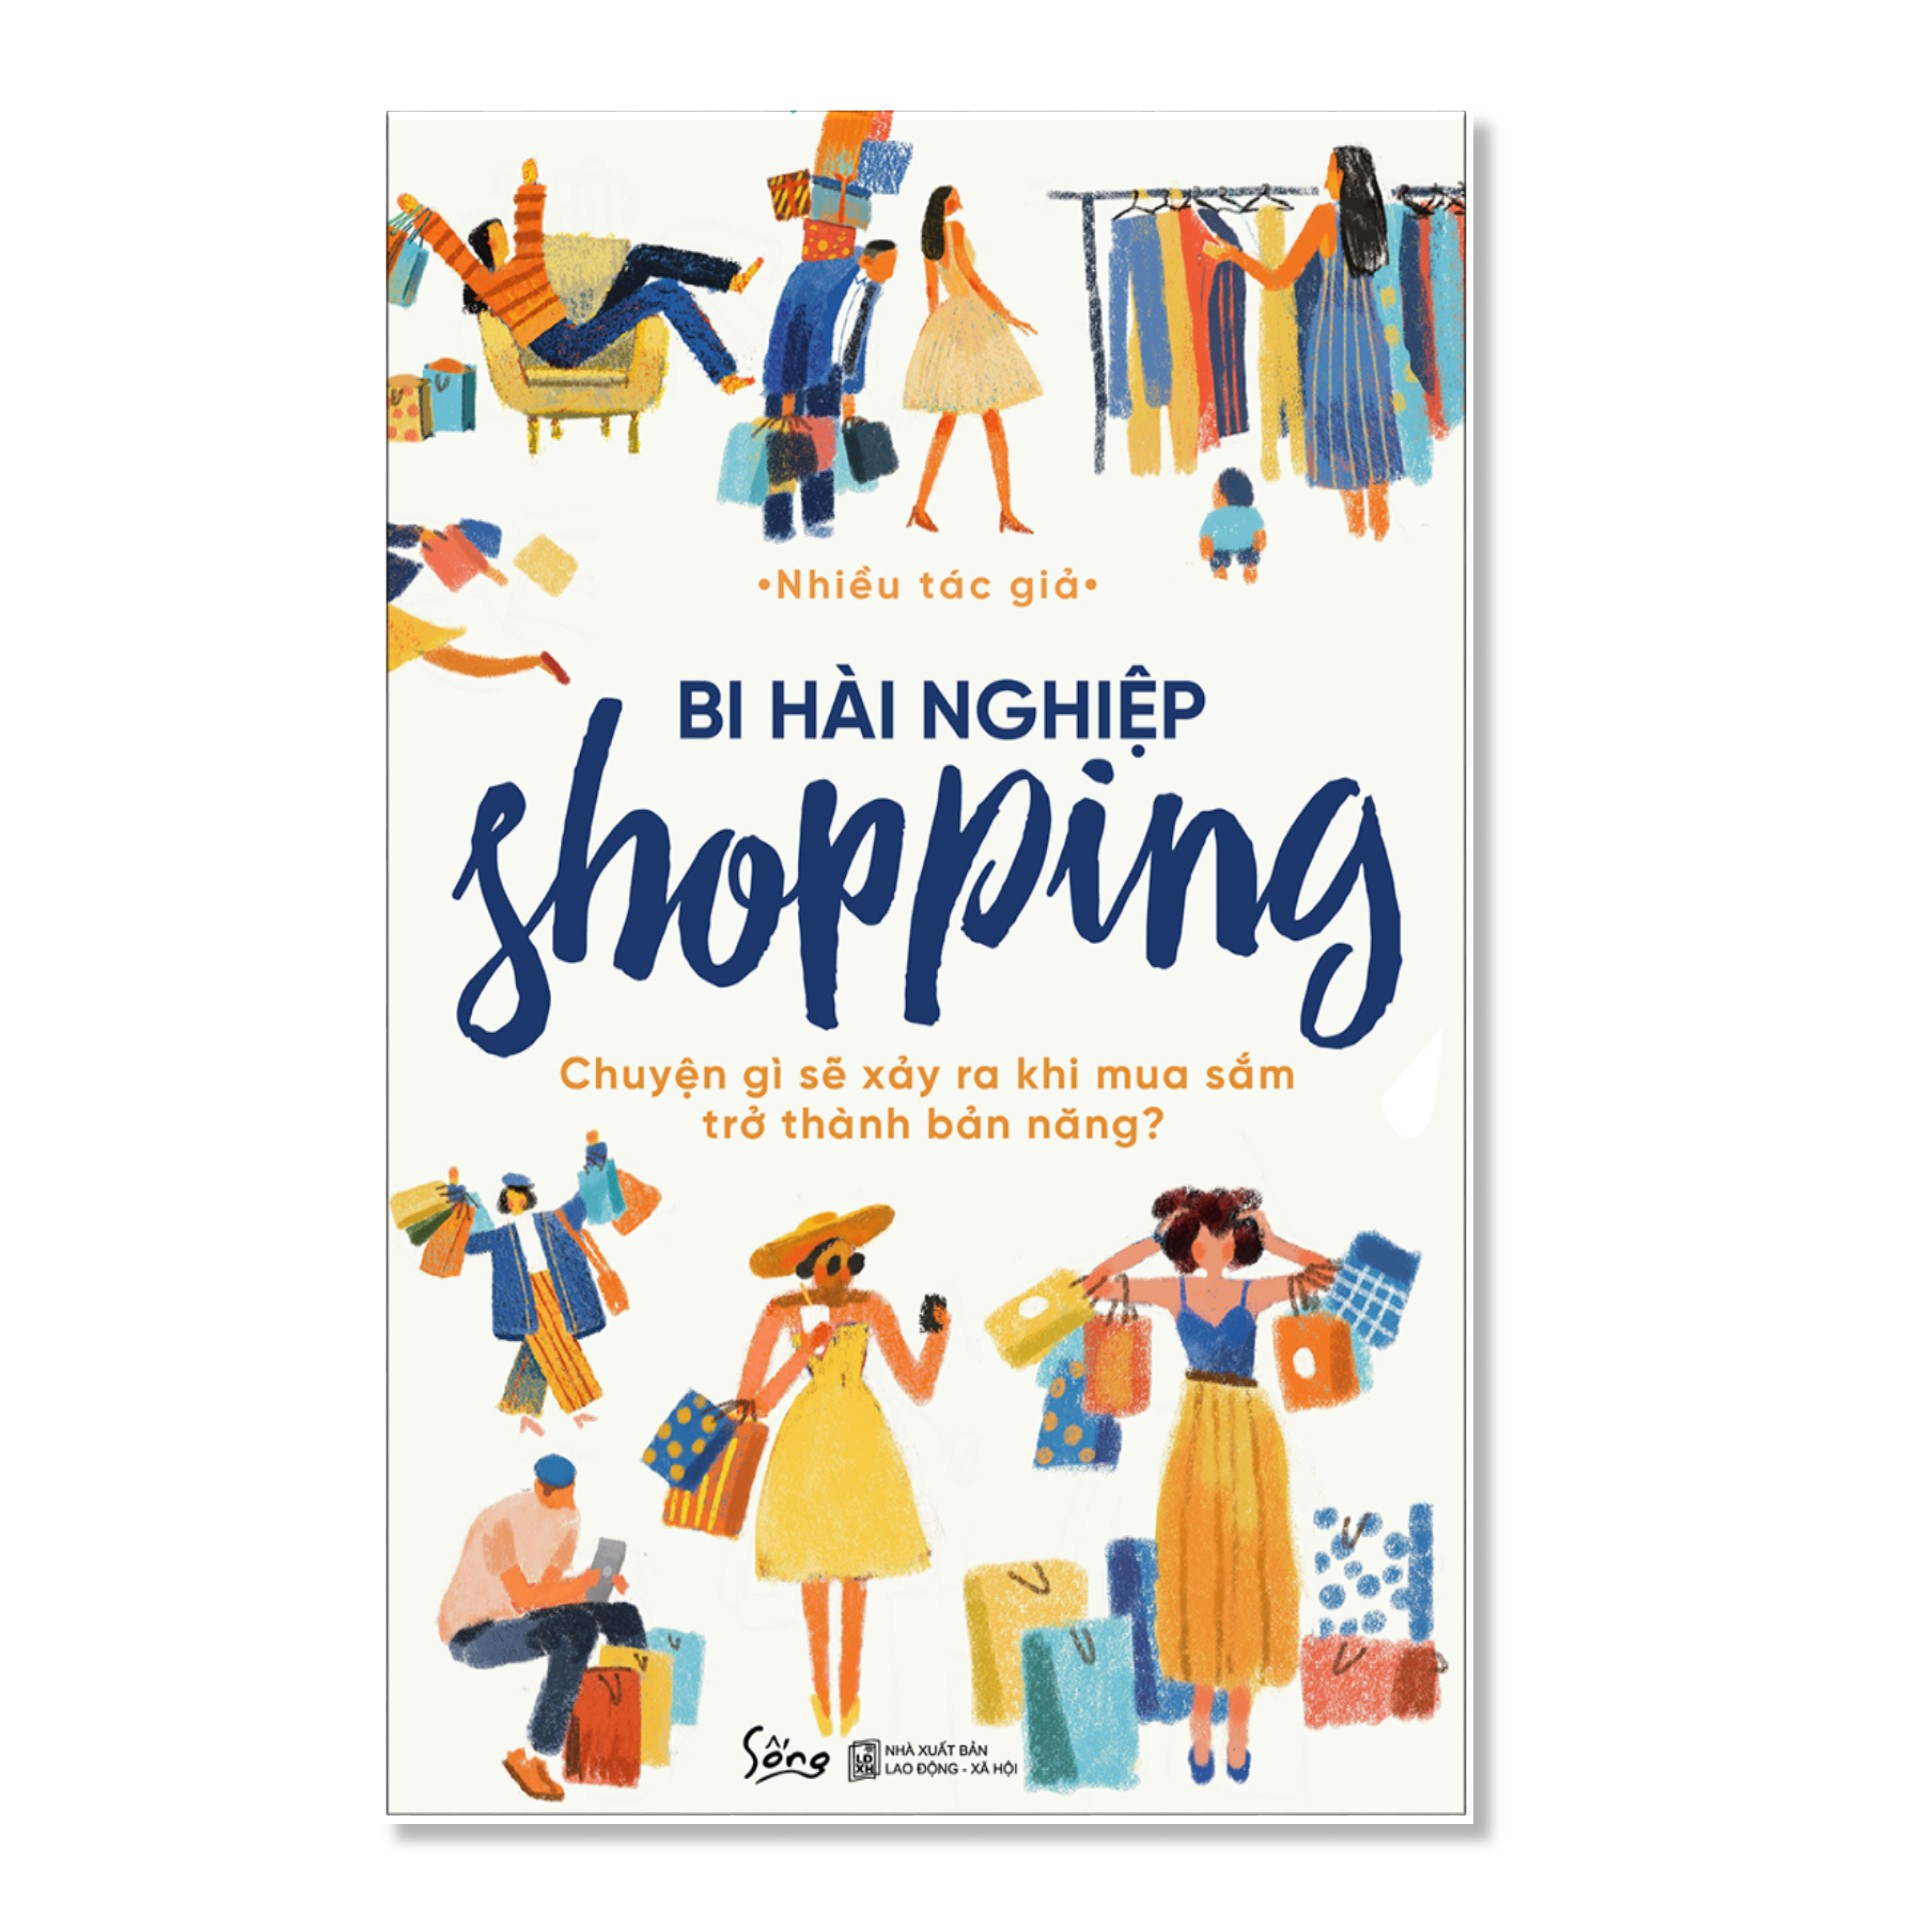 Combo Sách : Bi Hài Nghiệp Shopping – Chuyện Gì Sẽ Xảy Ra Khi Mua Sắm Trở Thành Bản Năng? + Những Sai Lầm Đắt Giá Trong Marketing